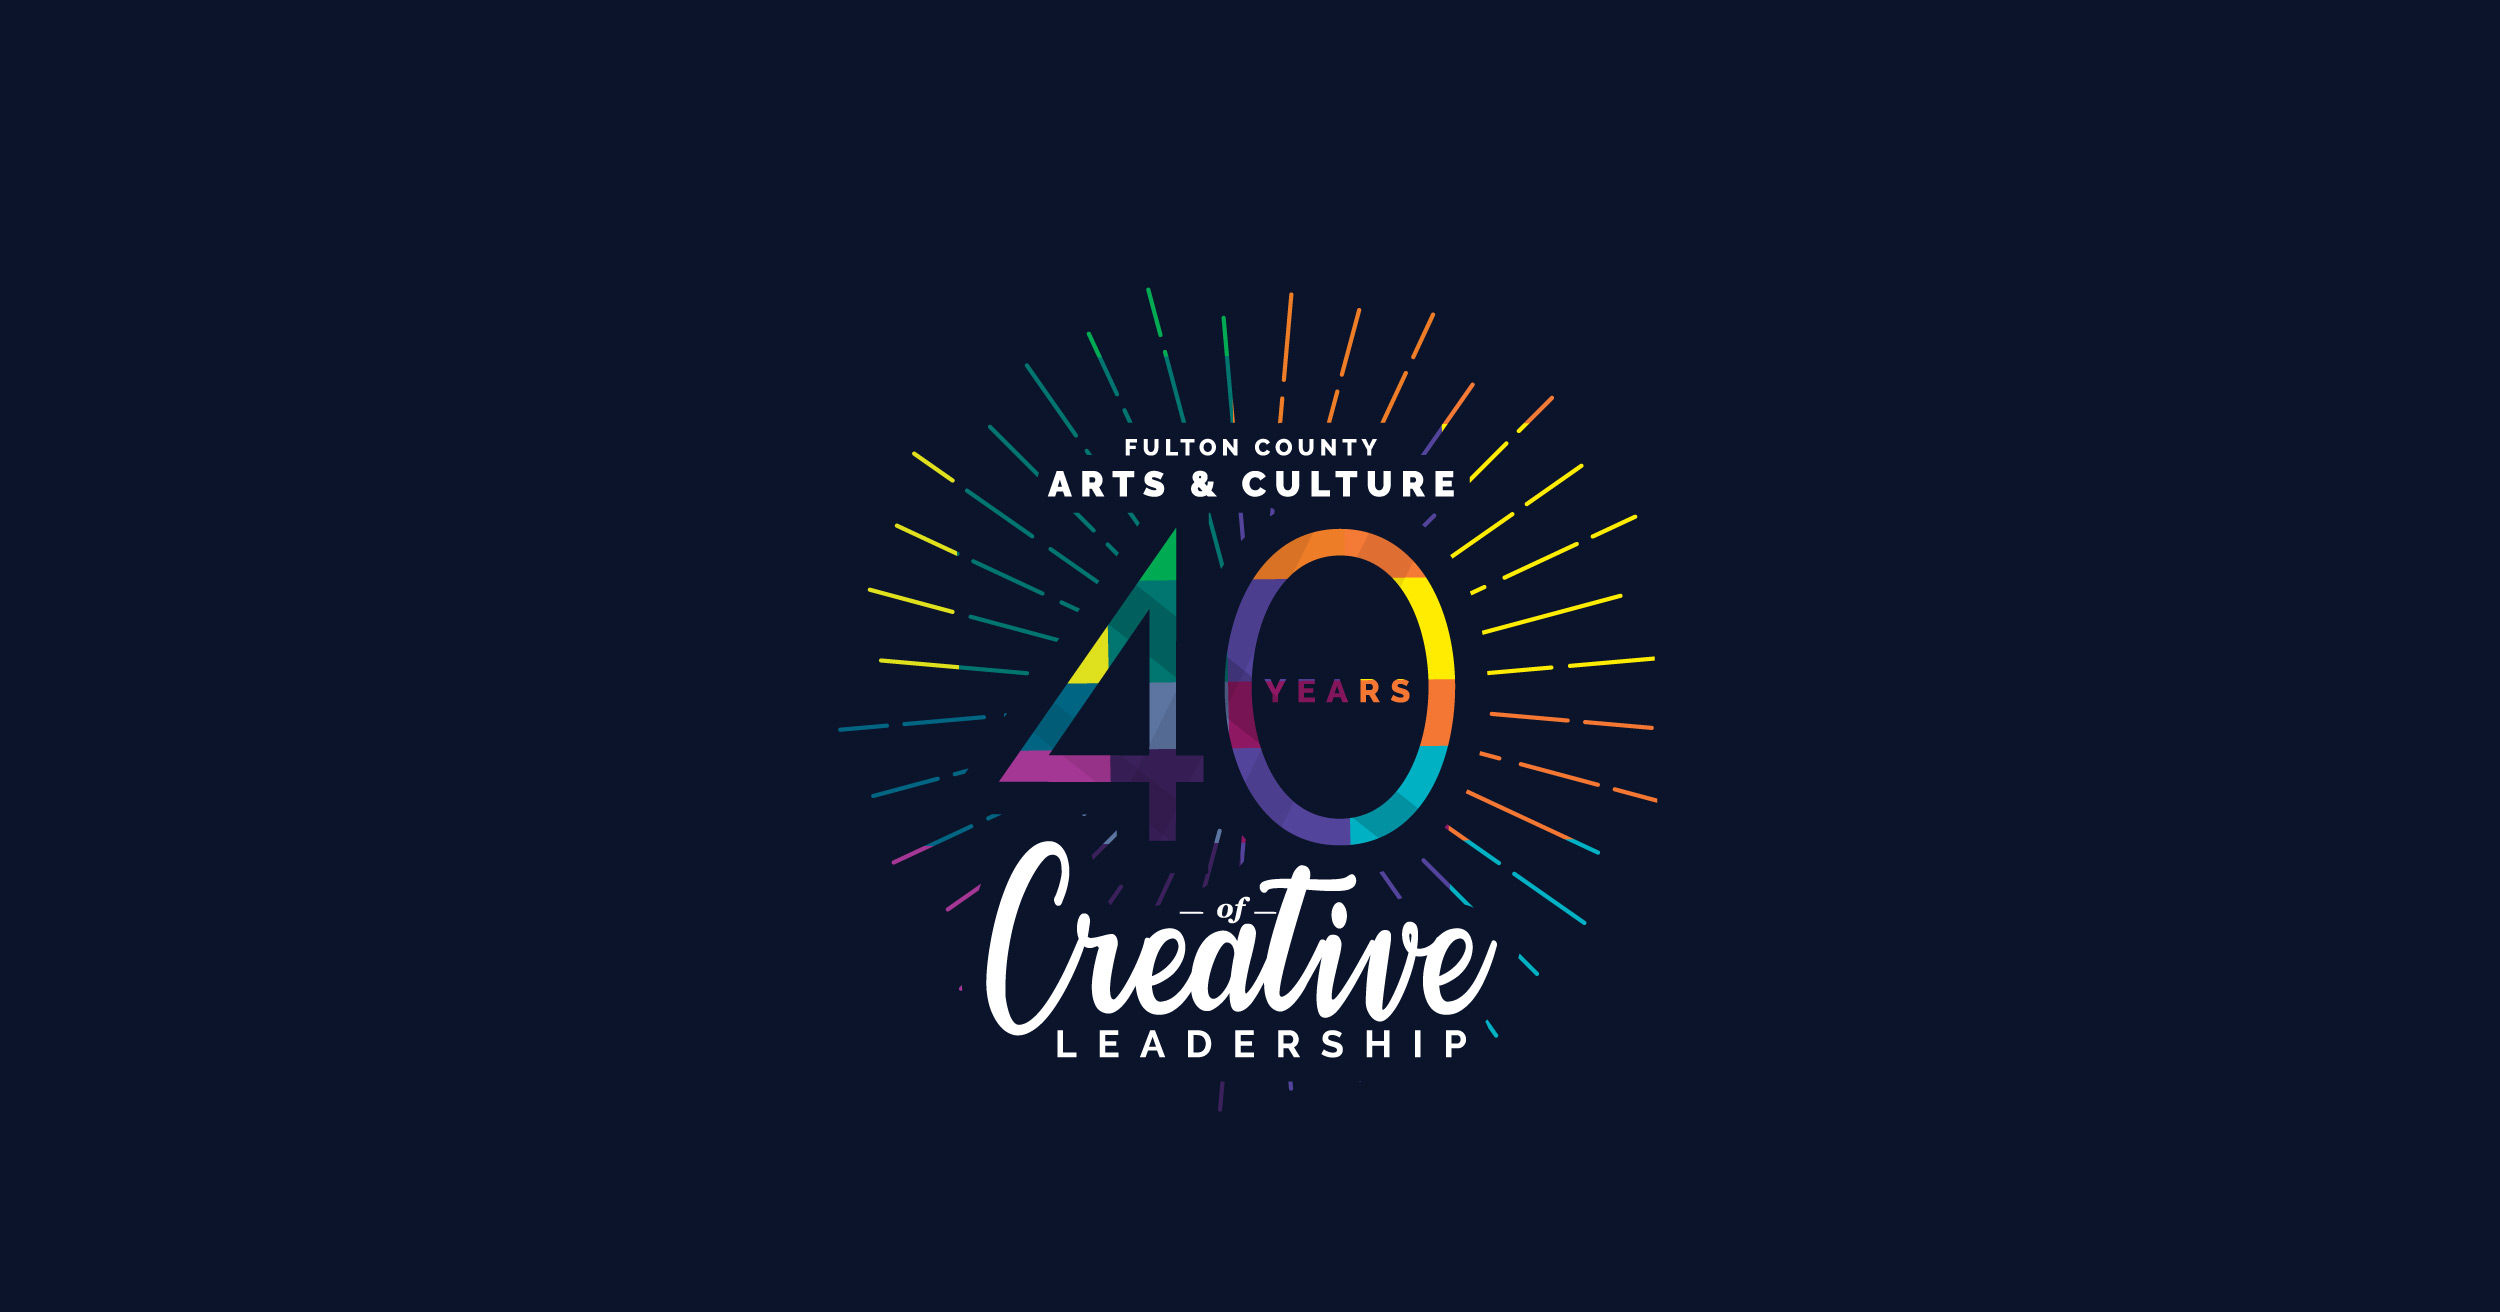 Logo Design for Fulton County Arts & Culture 40th Anniversary Celebration